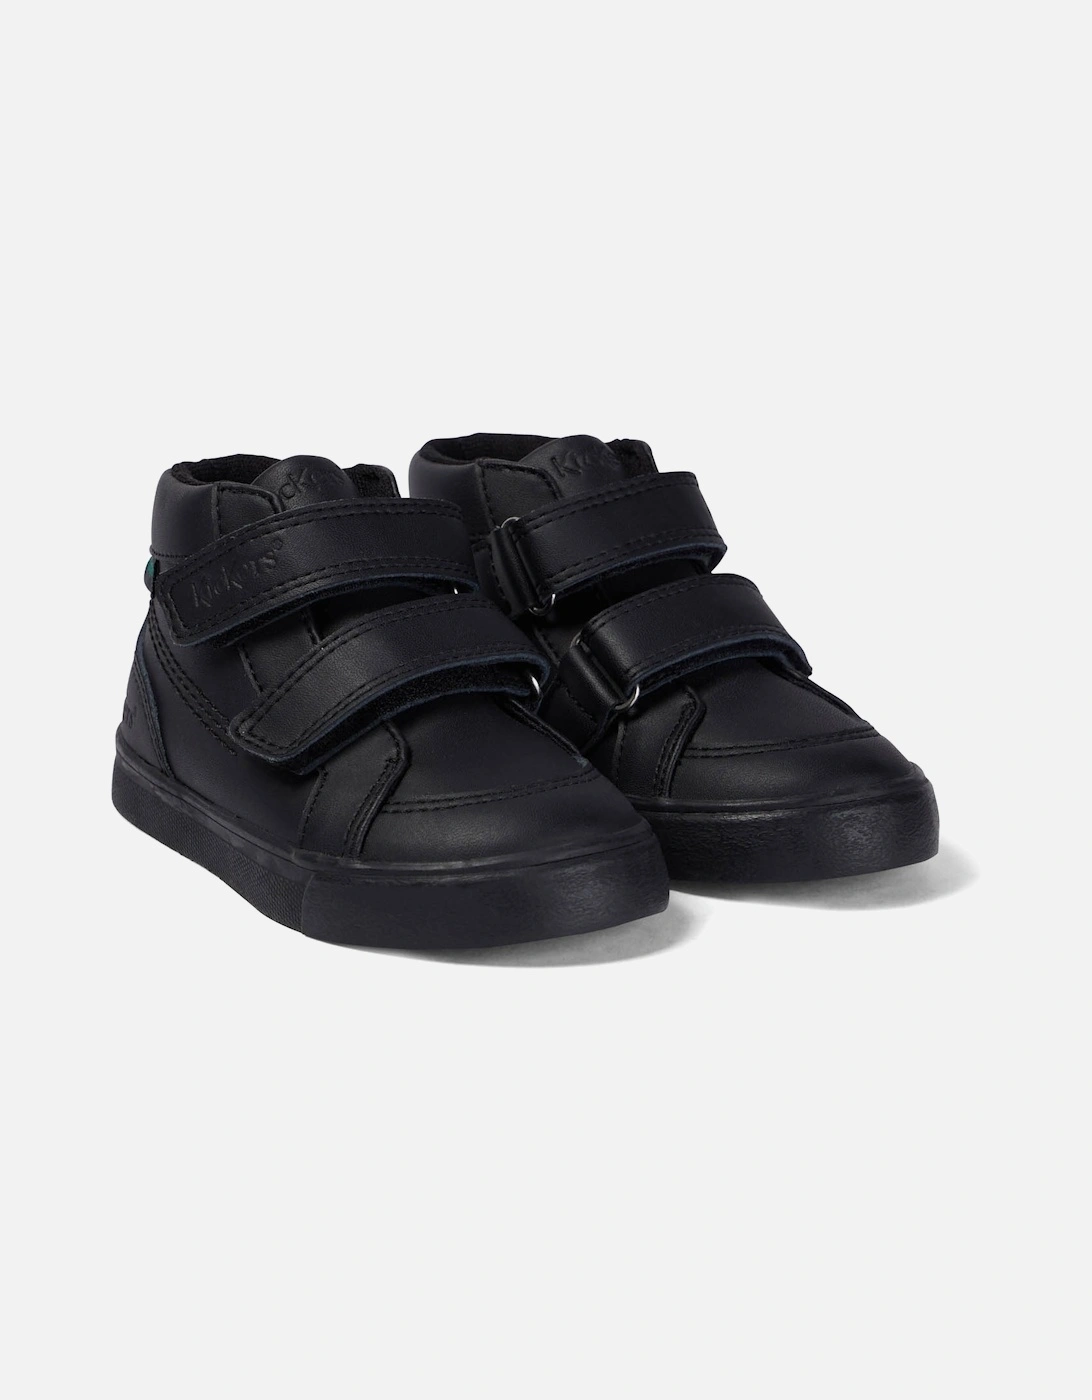 Infants Tovni Hi Leather Shoes (Black), 6 of 5